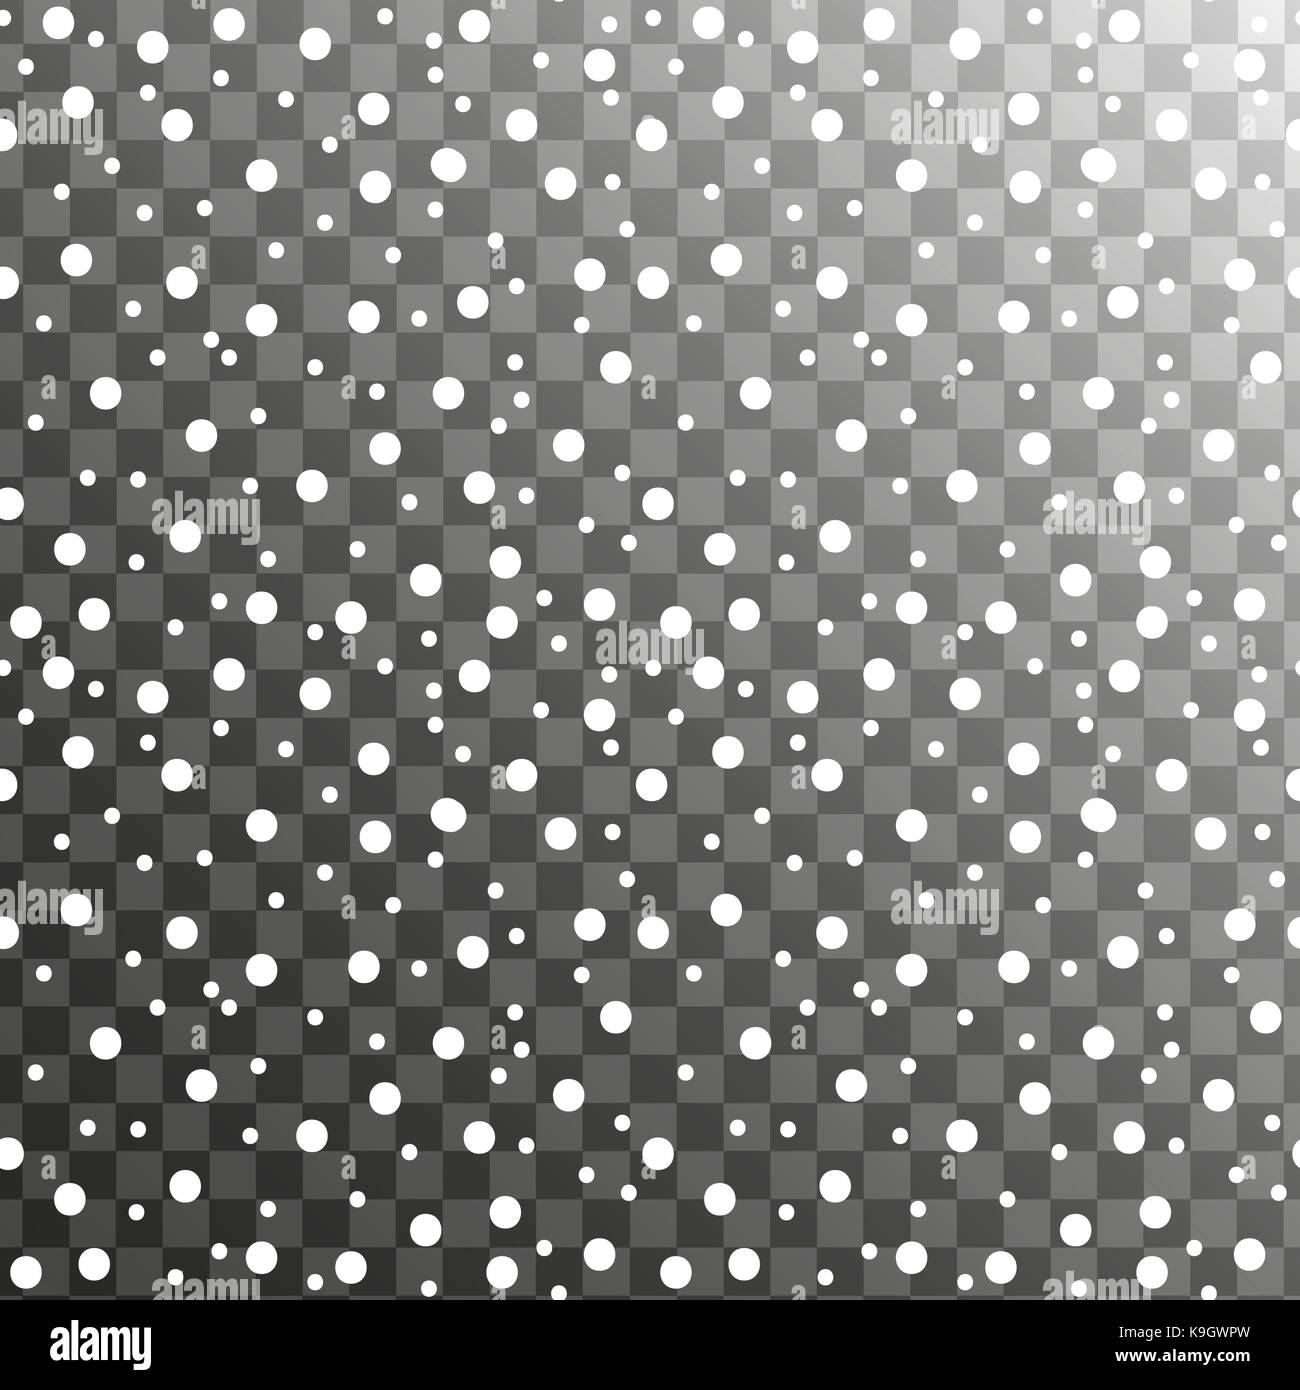 Realistisch fallende Schneeflocken nahtlose Muster. Schnee fällt auf einen transparenten Hintergrund isoliert. Vector Illustration. Stock Vektor